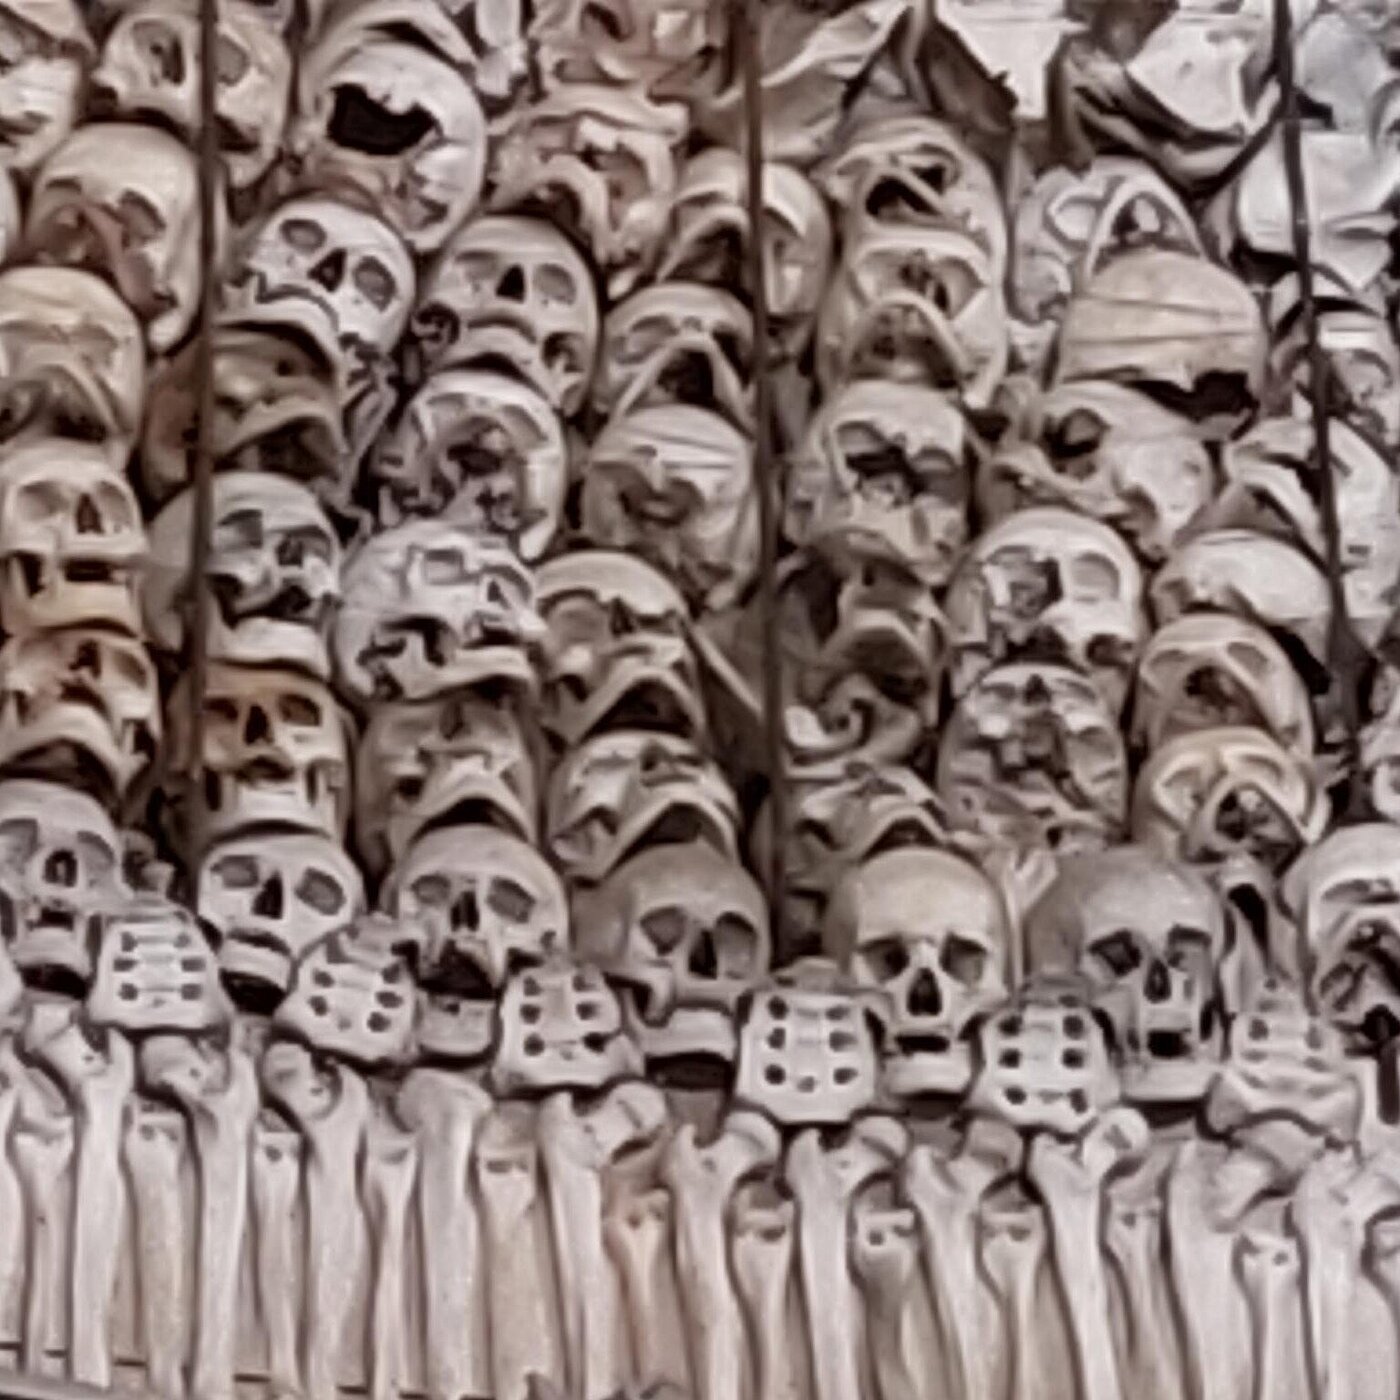 Knochen und Schädel der verstobenen Soldaten von Solferino